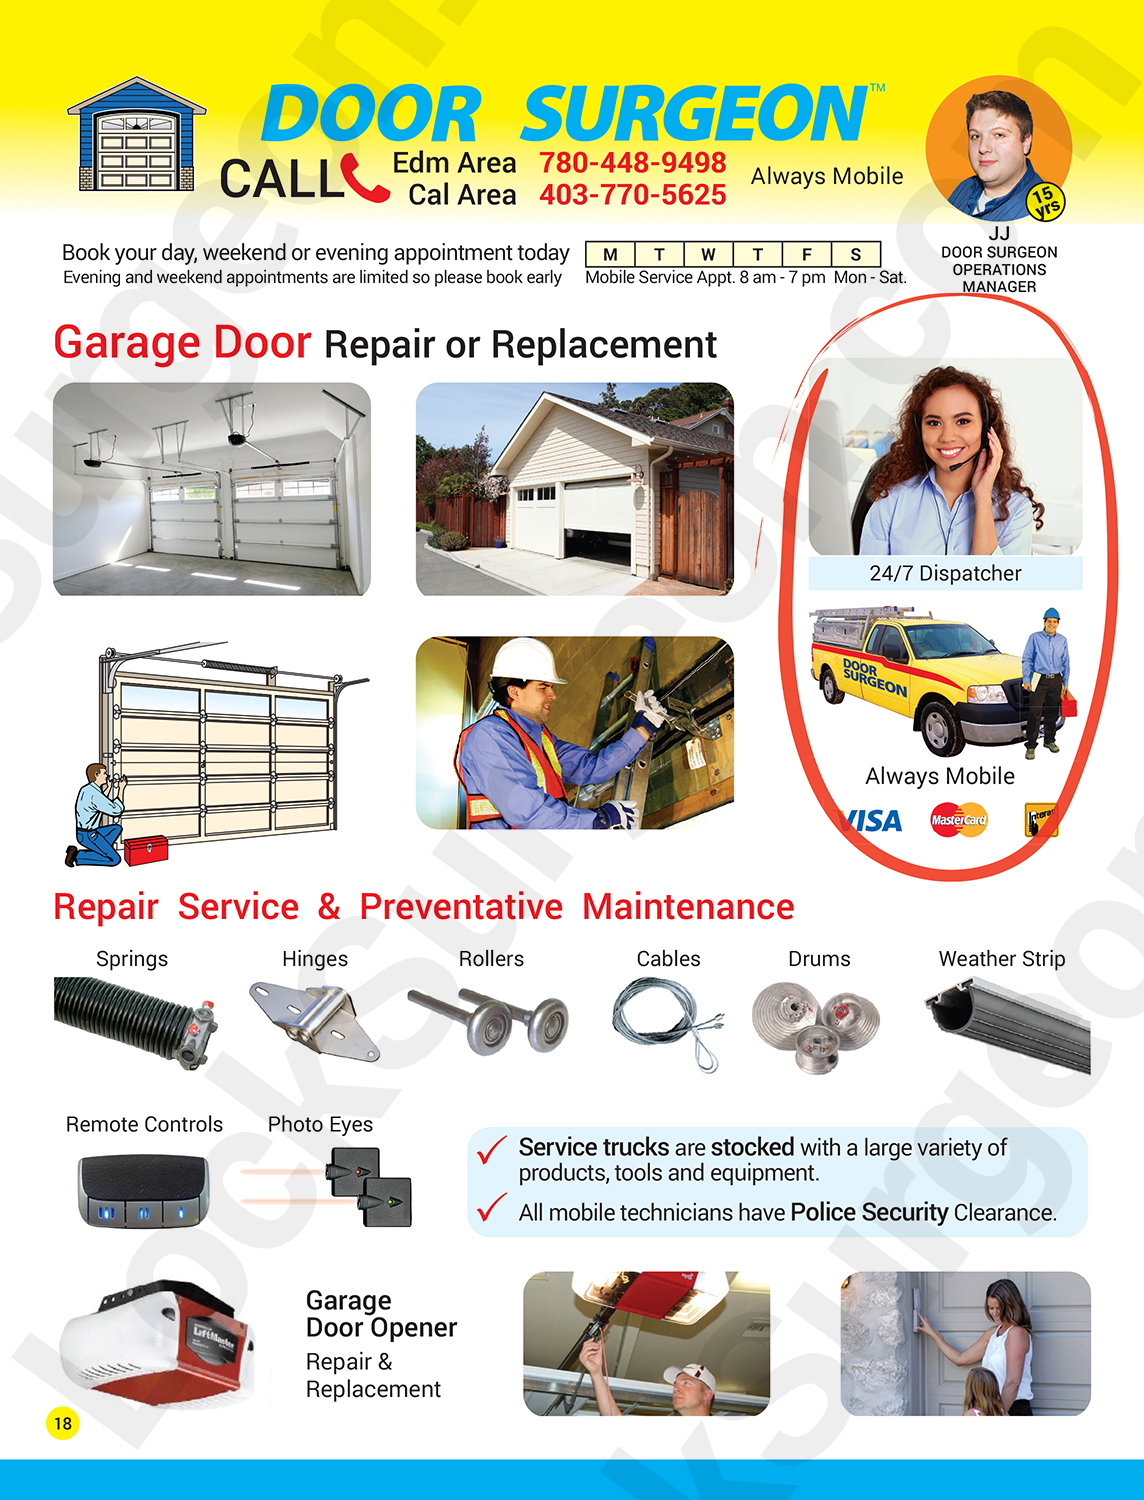 Lock Surgeon garage door replacement services expert garage door repair technicians Acheson.